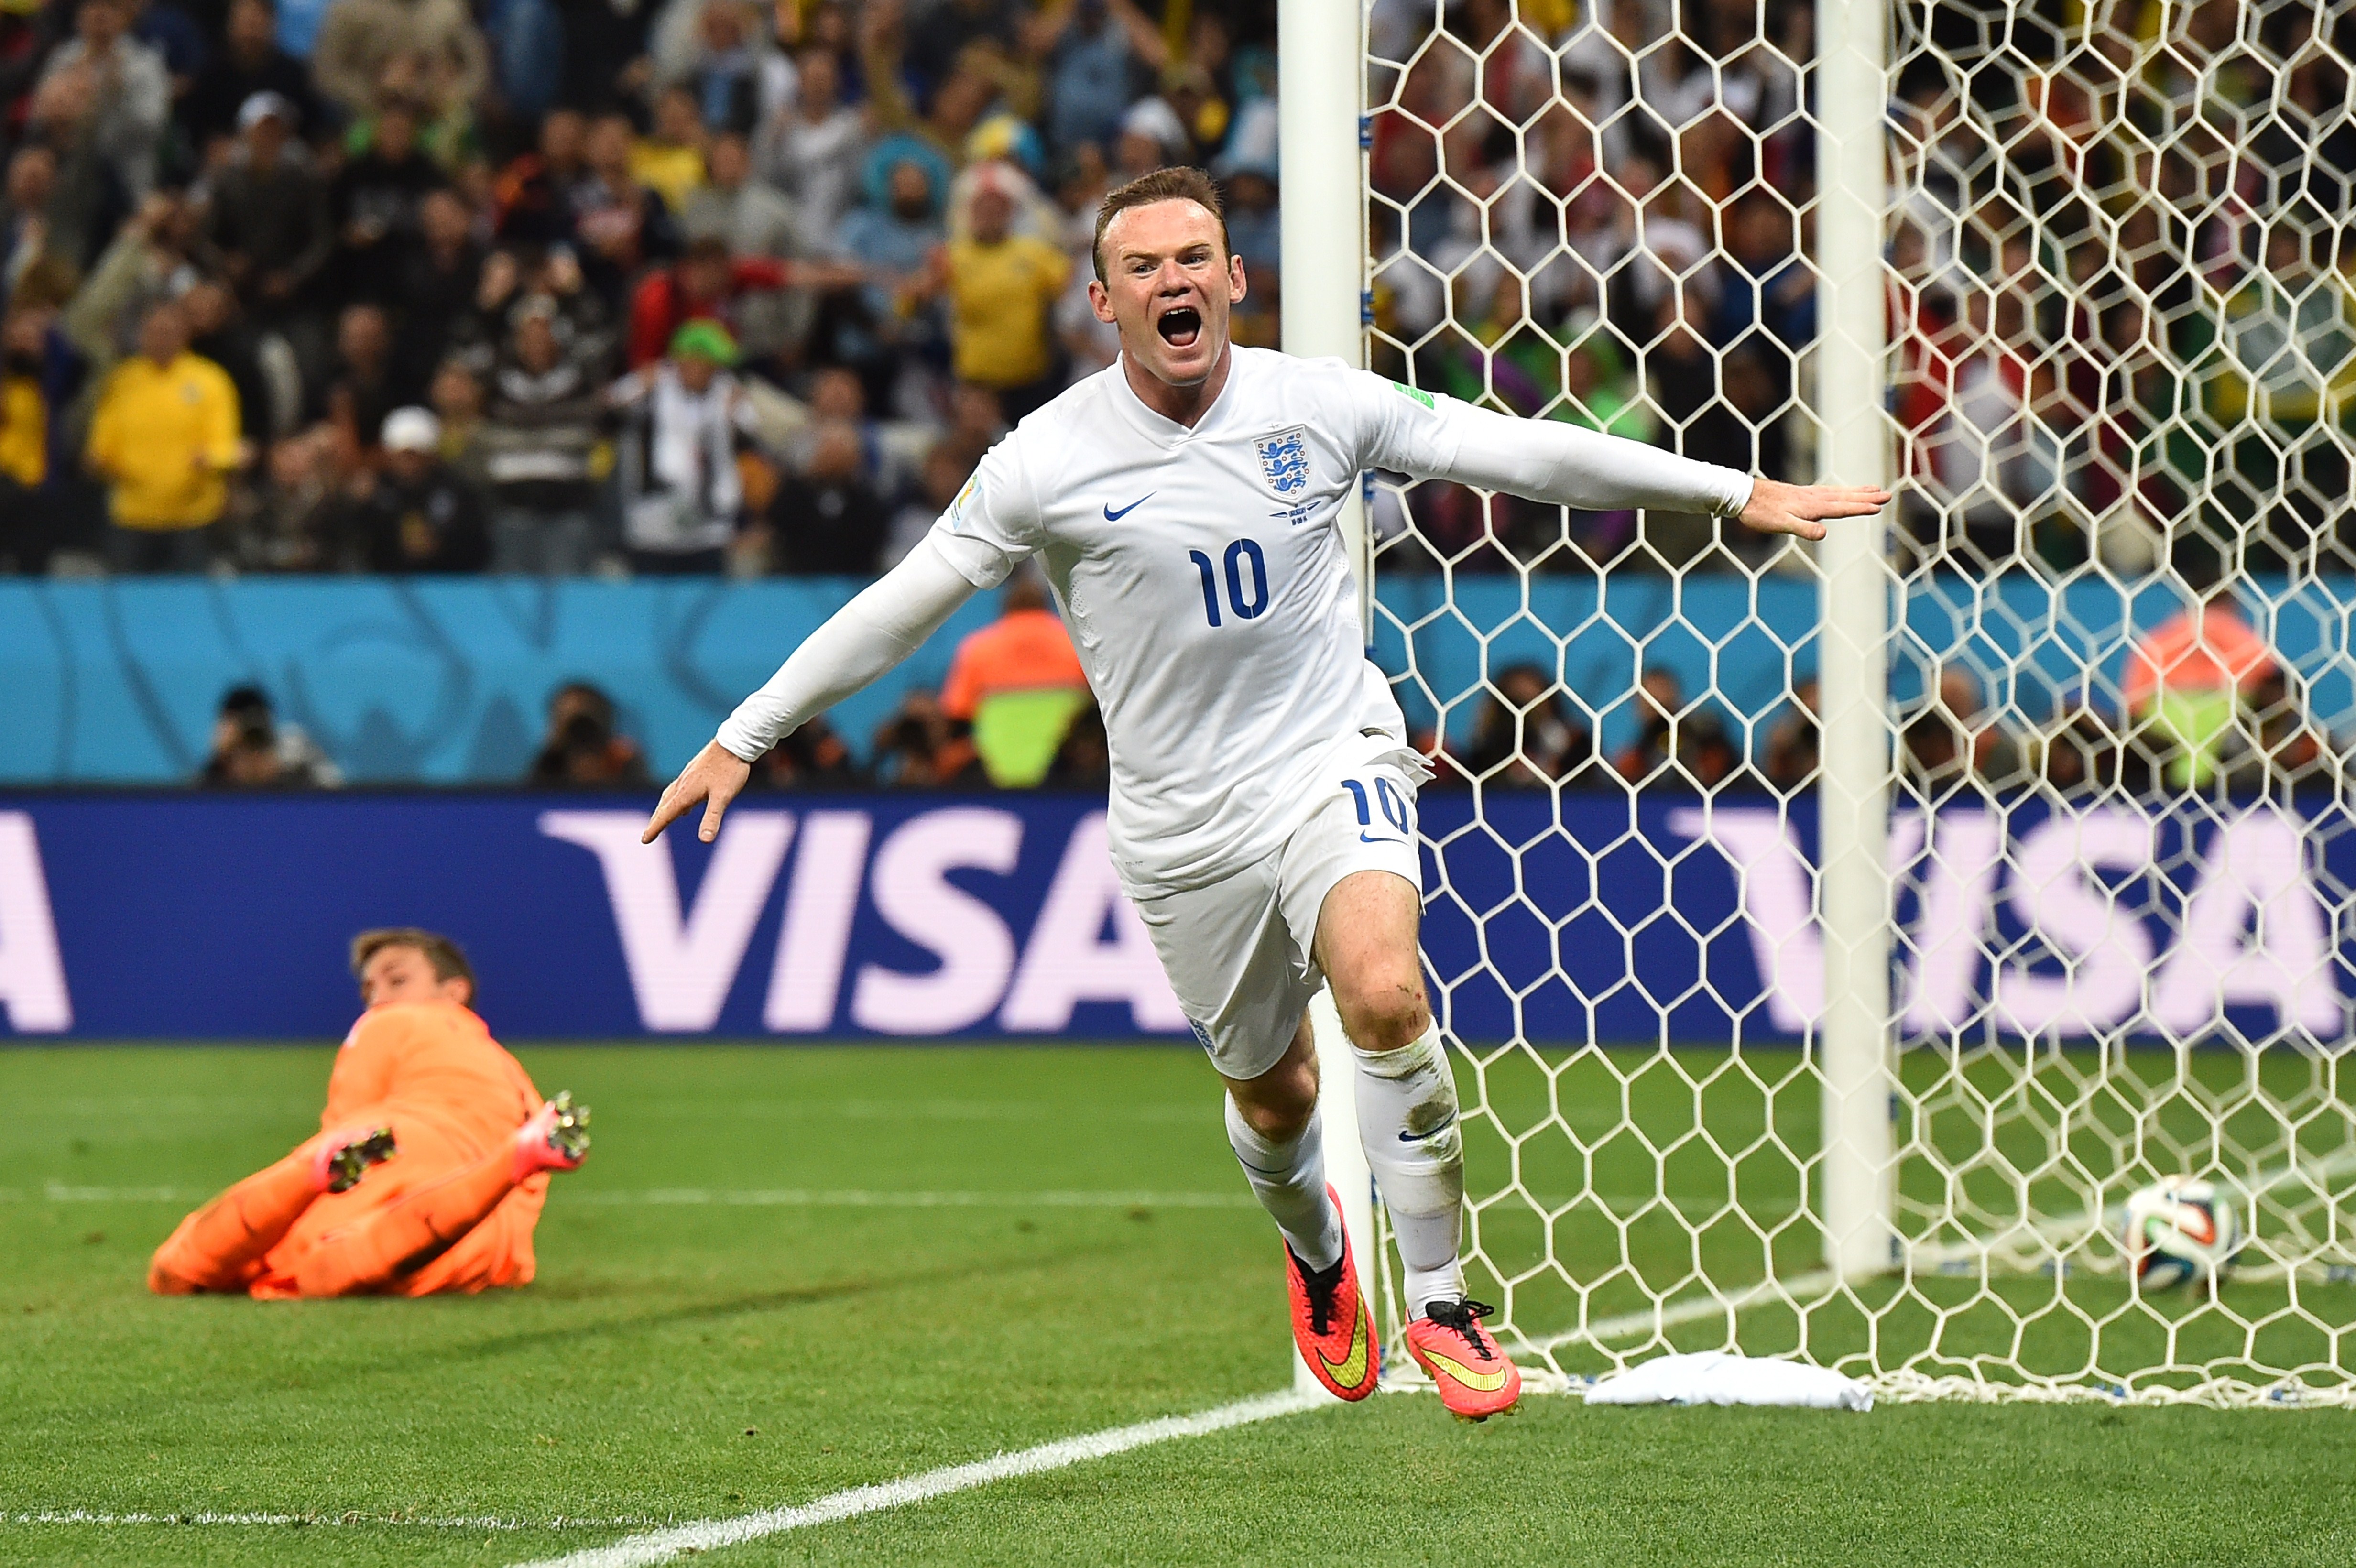 England News: Wayne Rooney international goal record - Goal.com | Goal.com